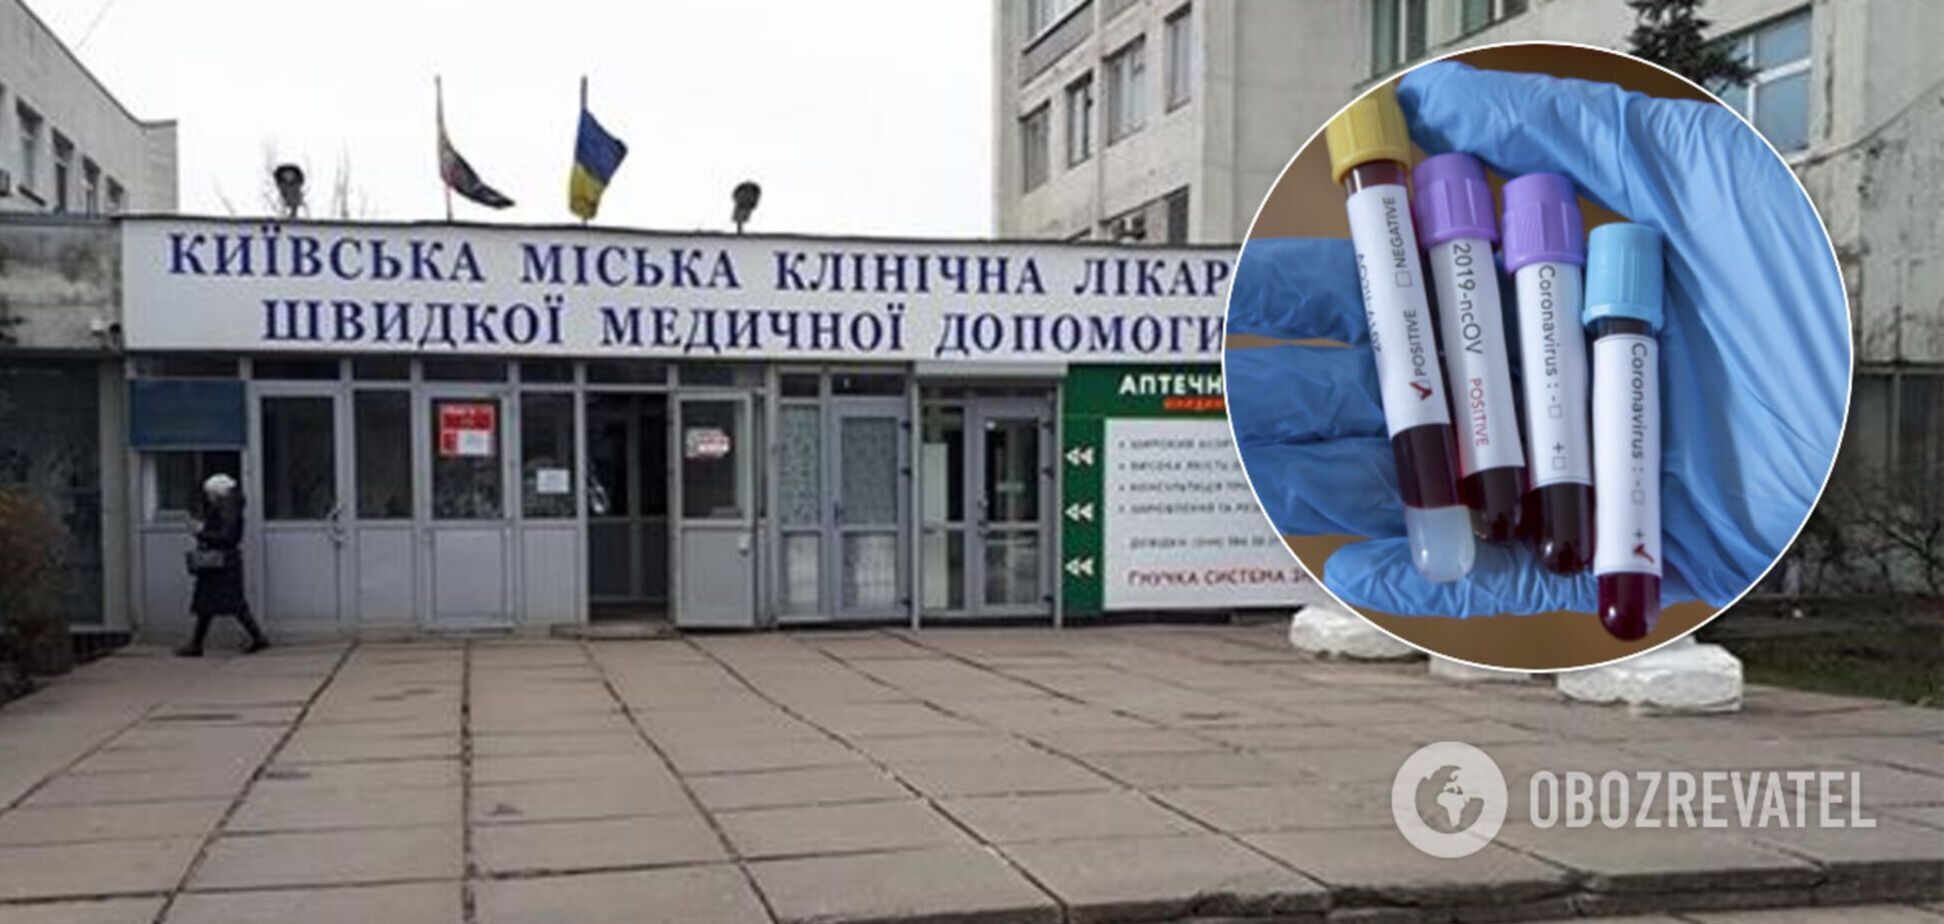 В Киевской городской клинической больнице скорой медицинской помощи вскоре начнет работу новая ПЦР-лаборатория